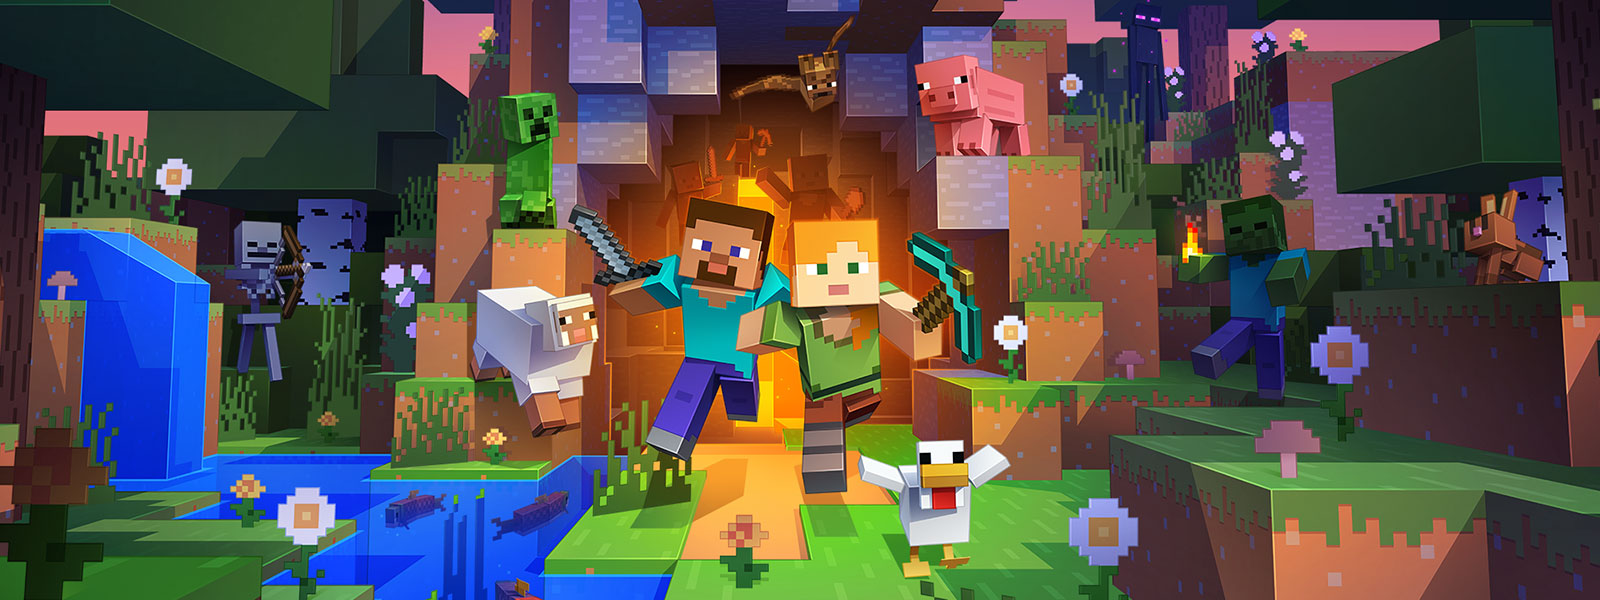 Deux personnages sortent dʼun tunnel accompagnés de nombreuses créatures du monde de Minecraft